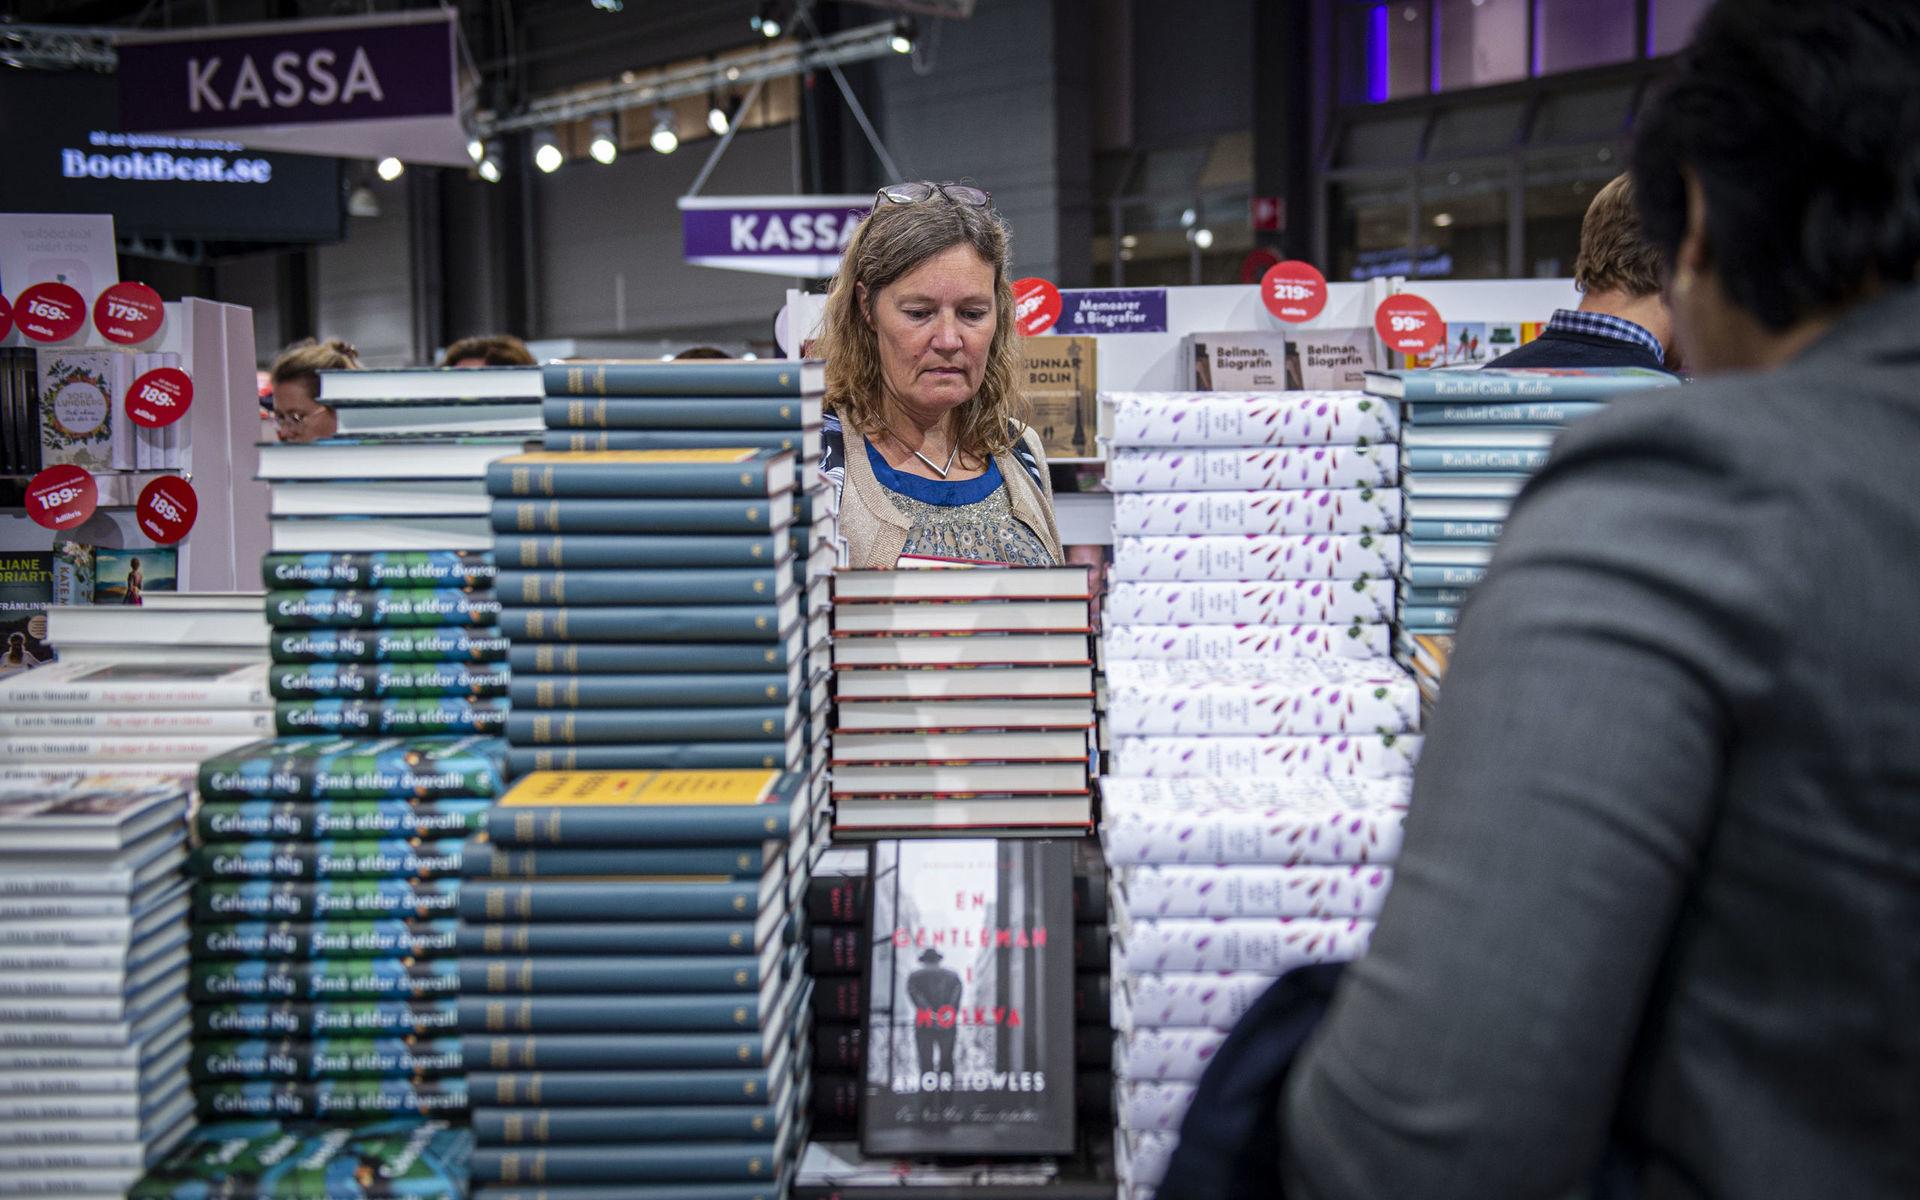 Trängseln var stor runt bokhögarna på Bokmässan 2019.